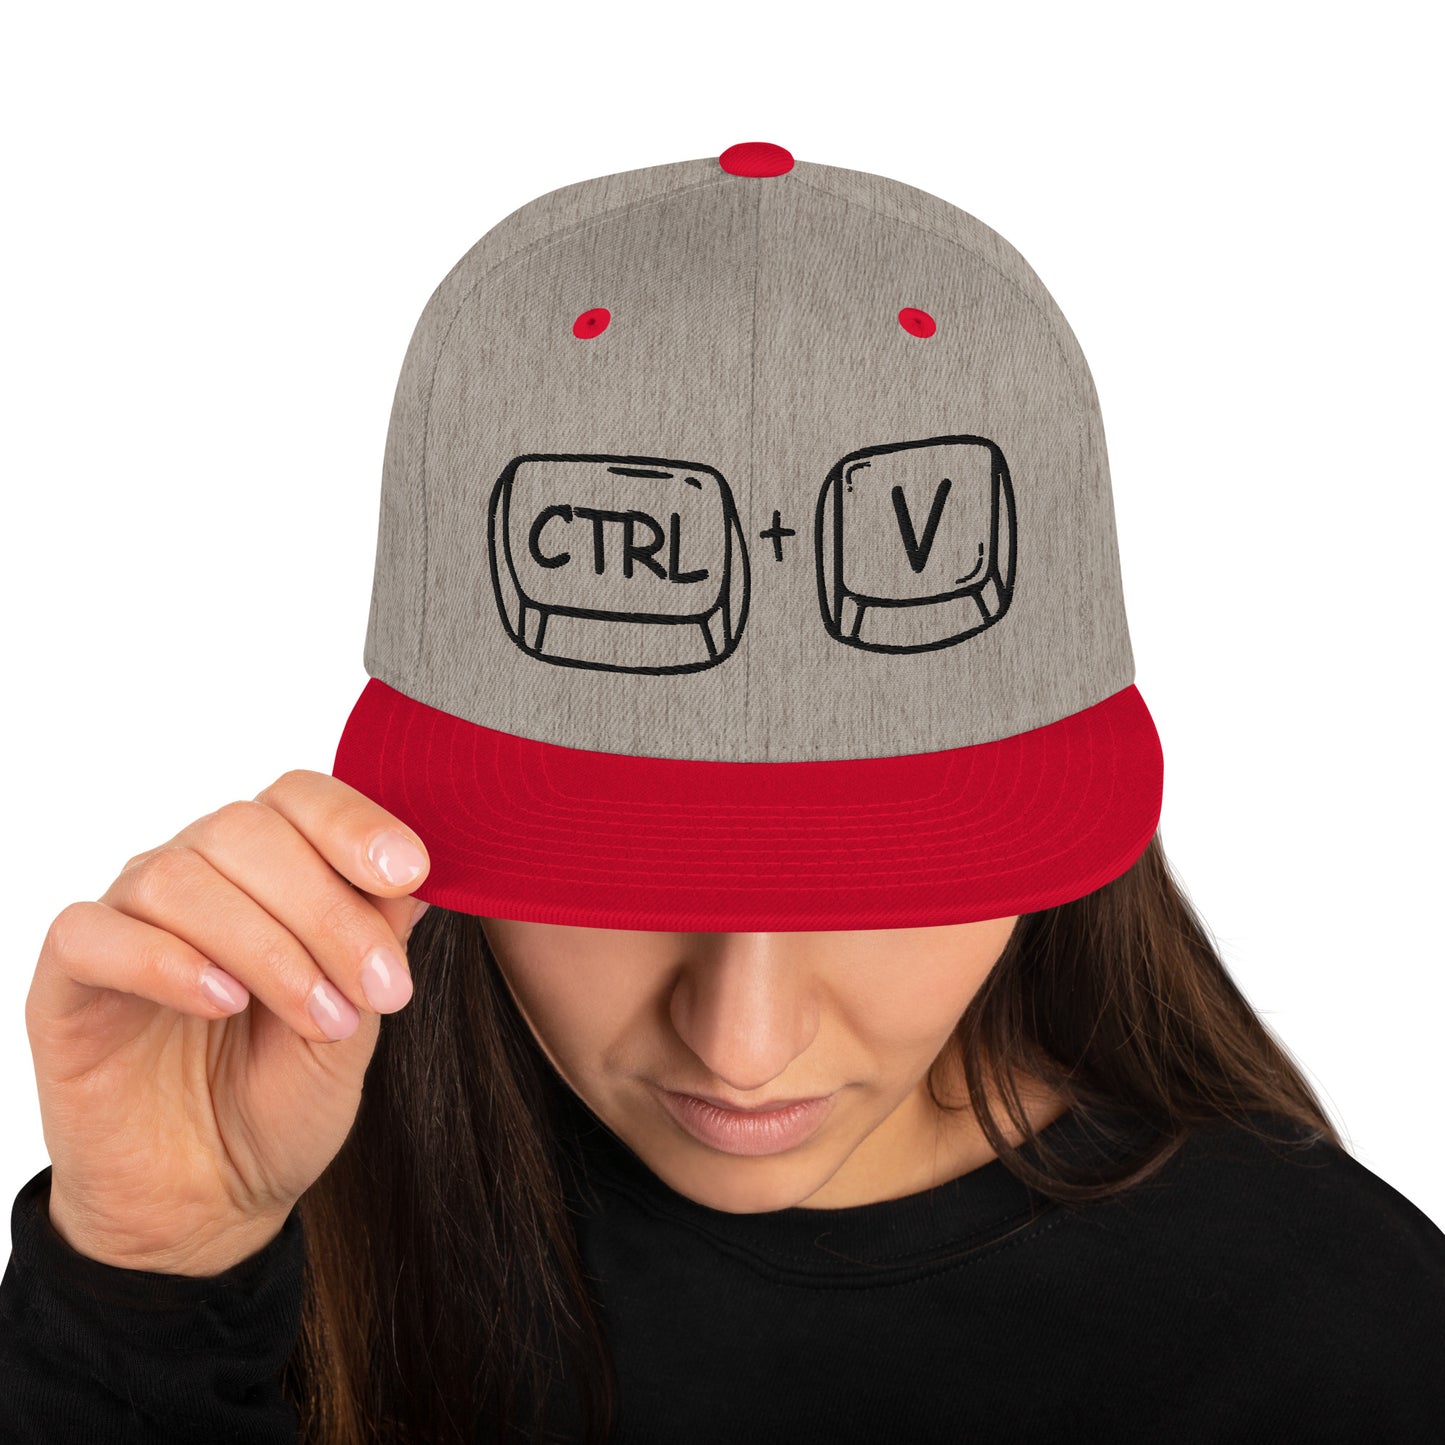 'CTRL + V' Snapback Hat